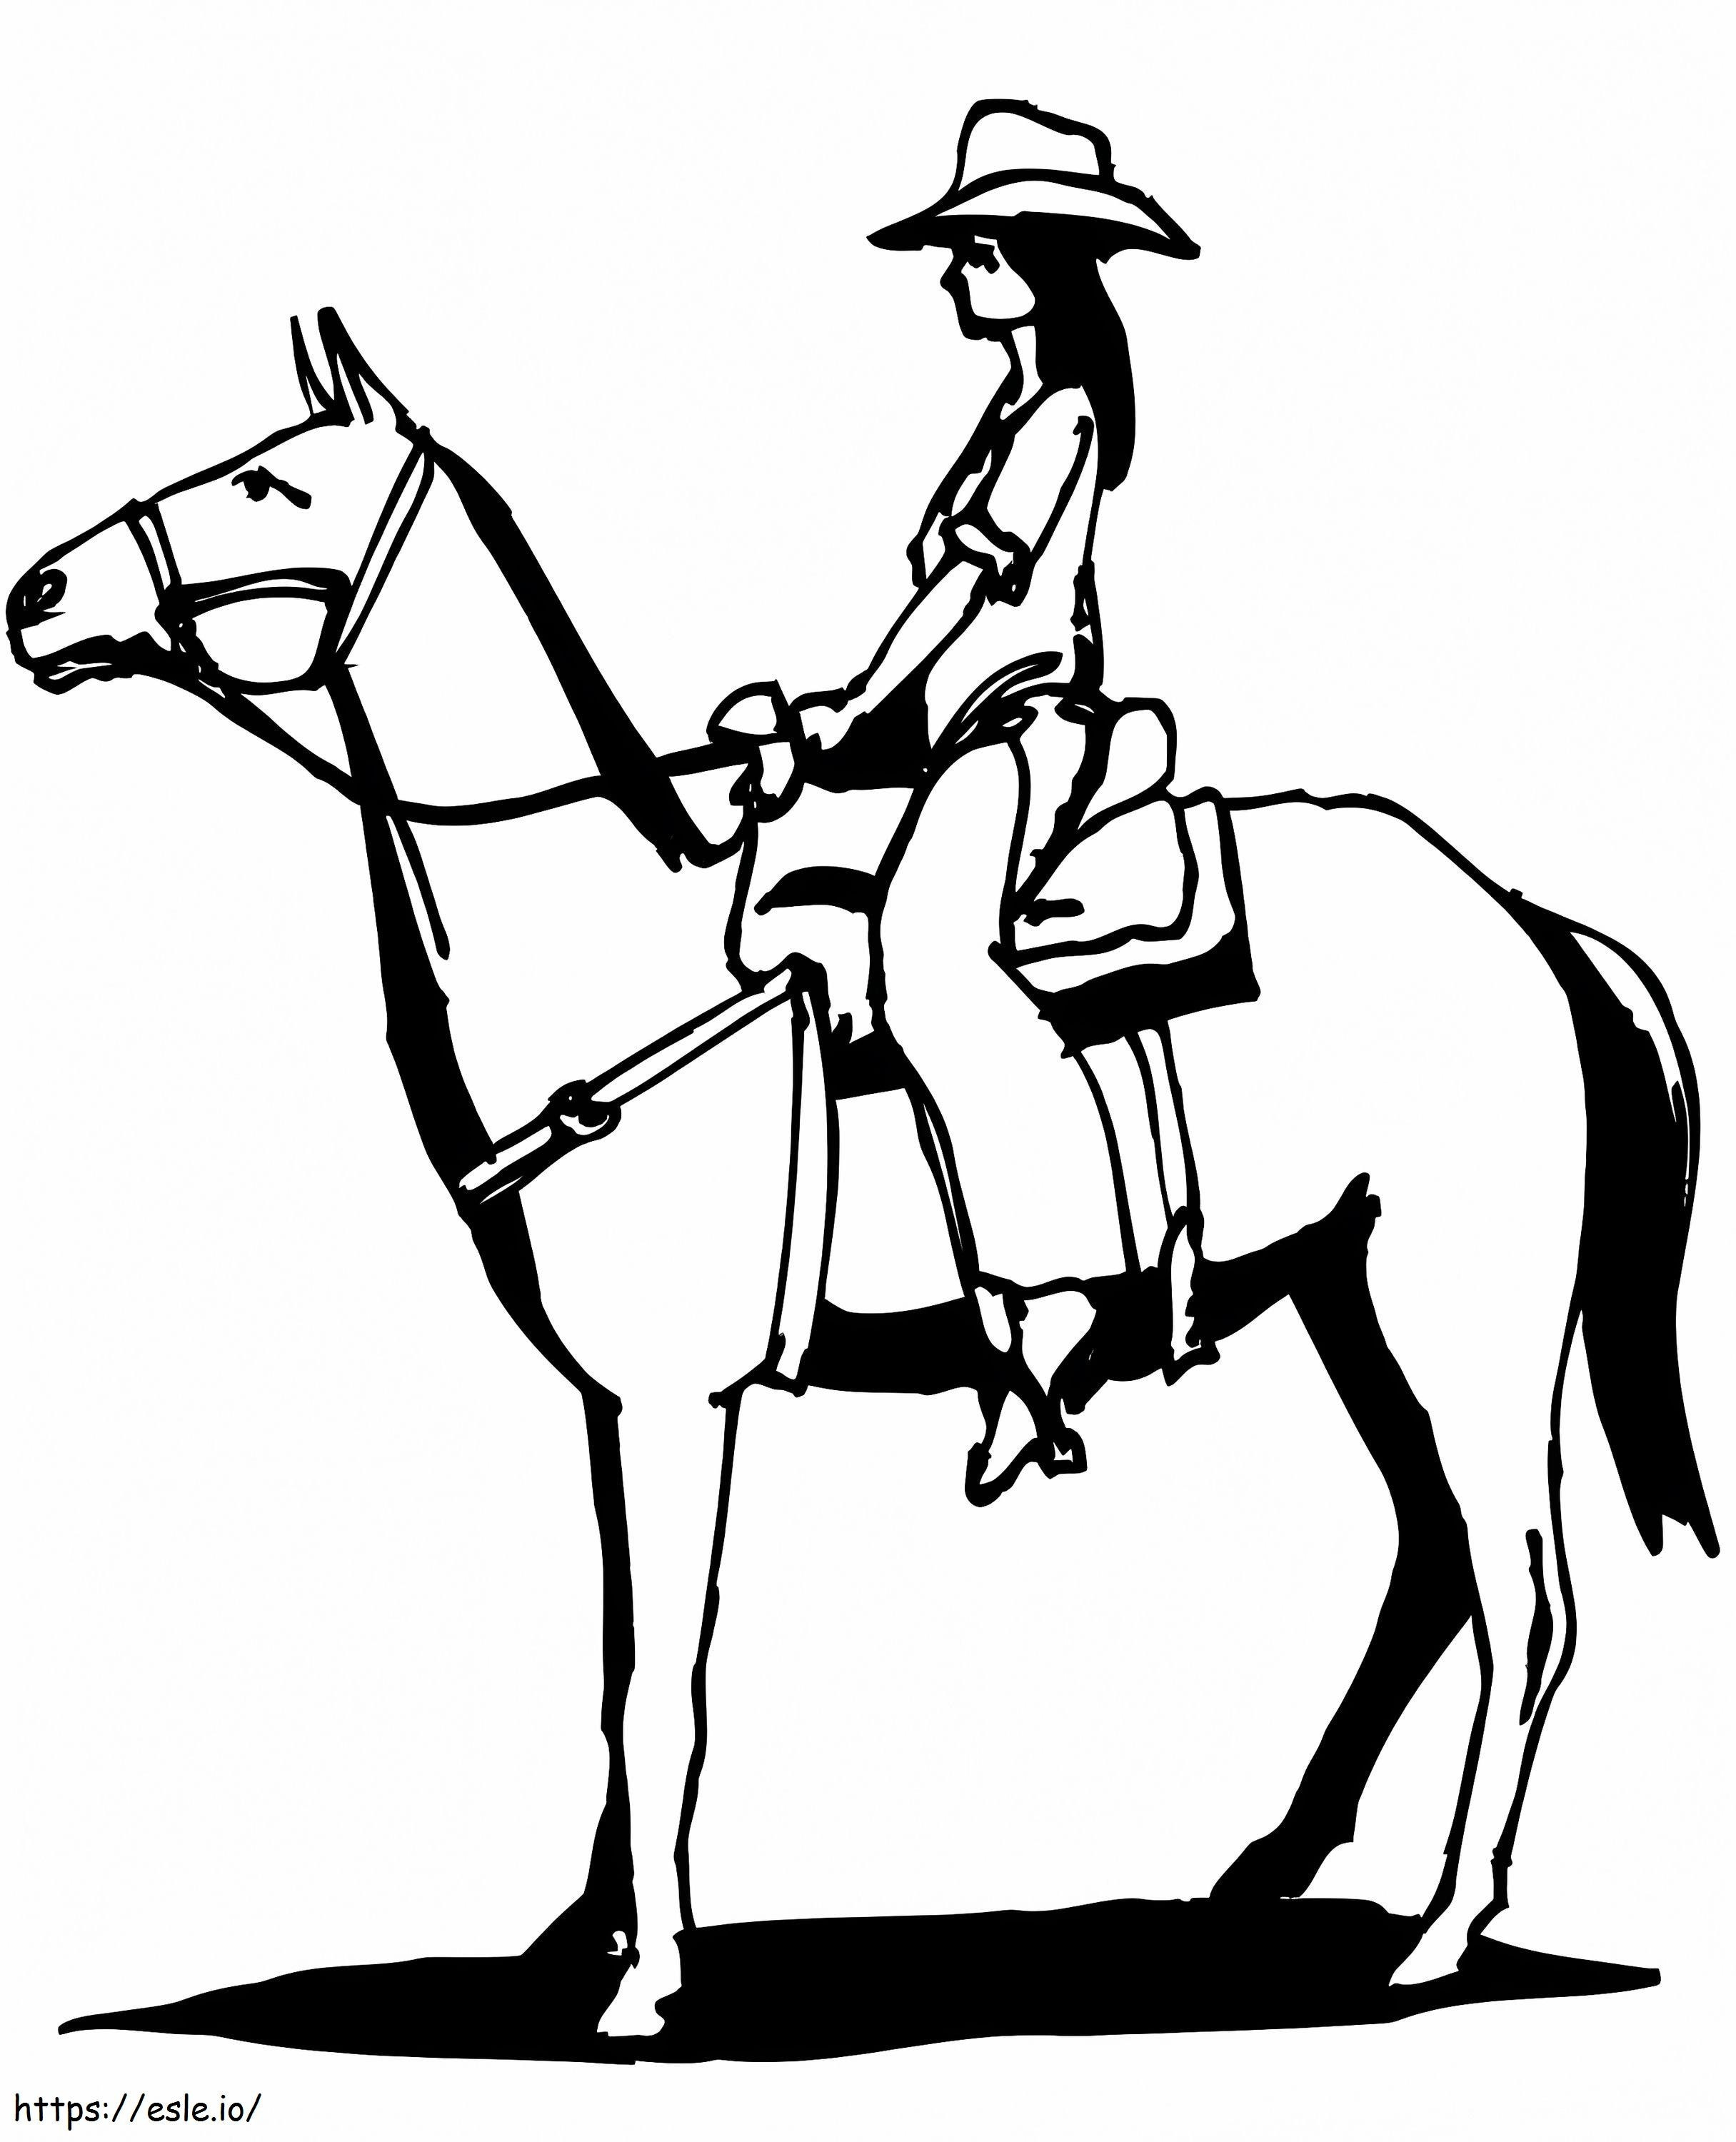 Vaqueira Montando Cavalo para colorir